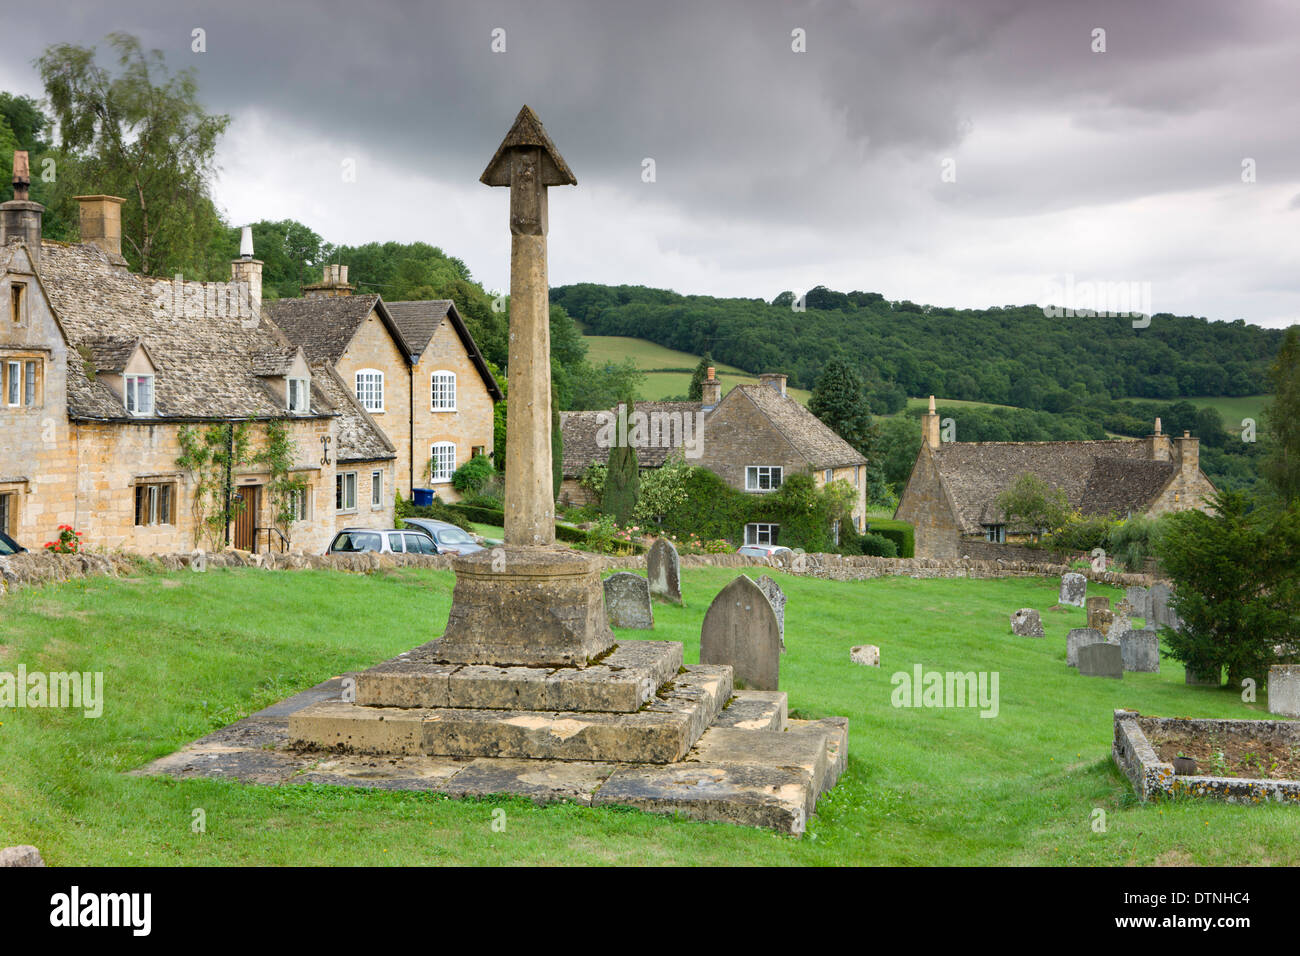 Cimetière de l'église St Barnabas et cottages dans le joli village de Cotswolds Snowshill, Worcestershire, Angleterre. Banque D'Images